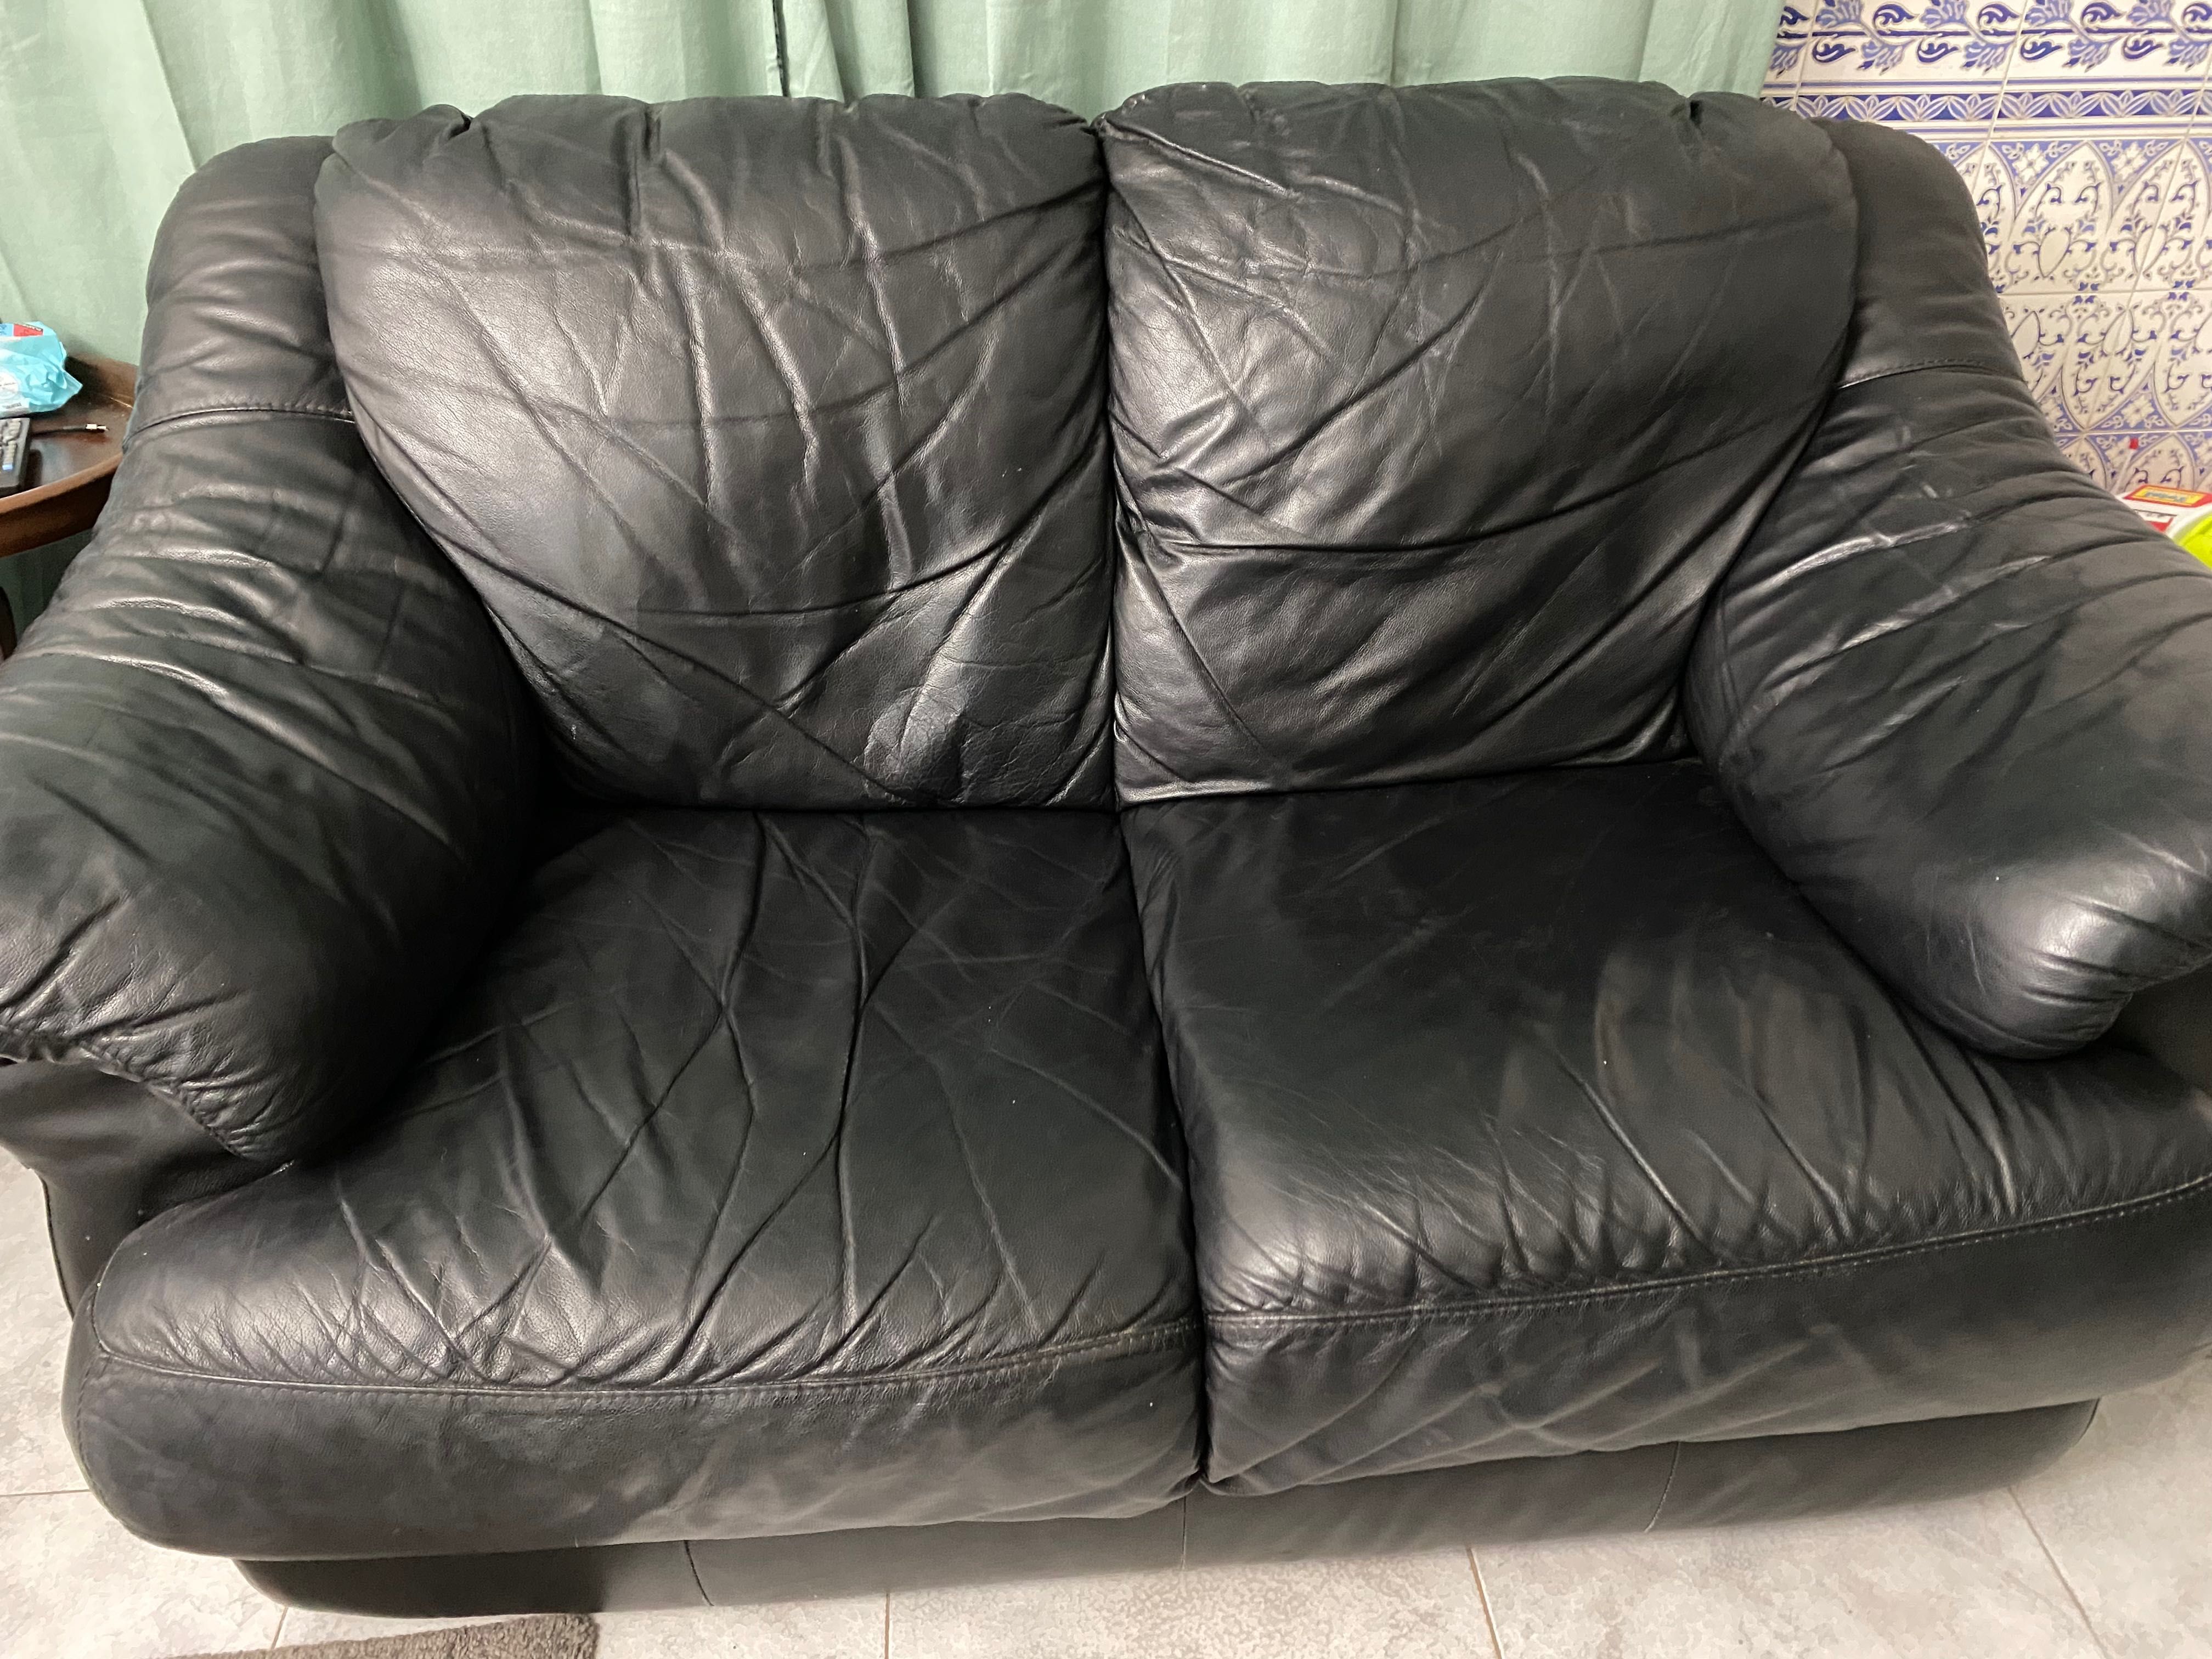 Sofa de pele preta com pouco uso